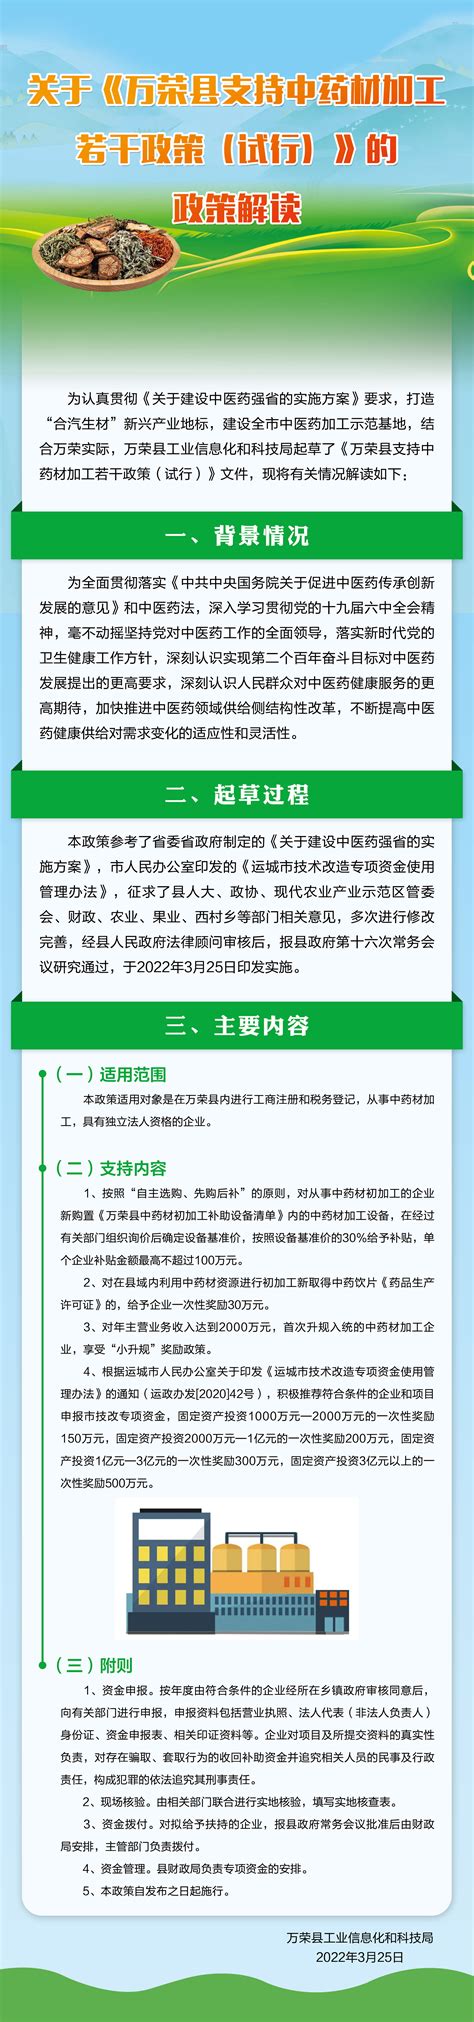 政策解读-万荣县人民政府门户网站